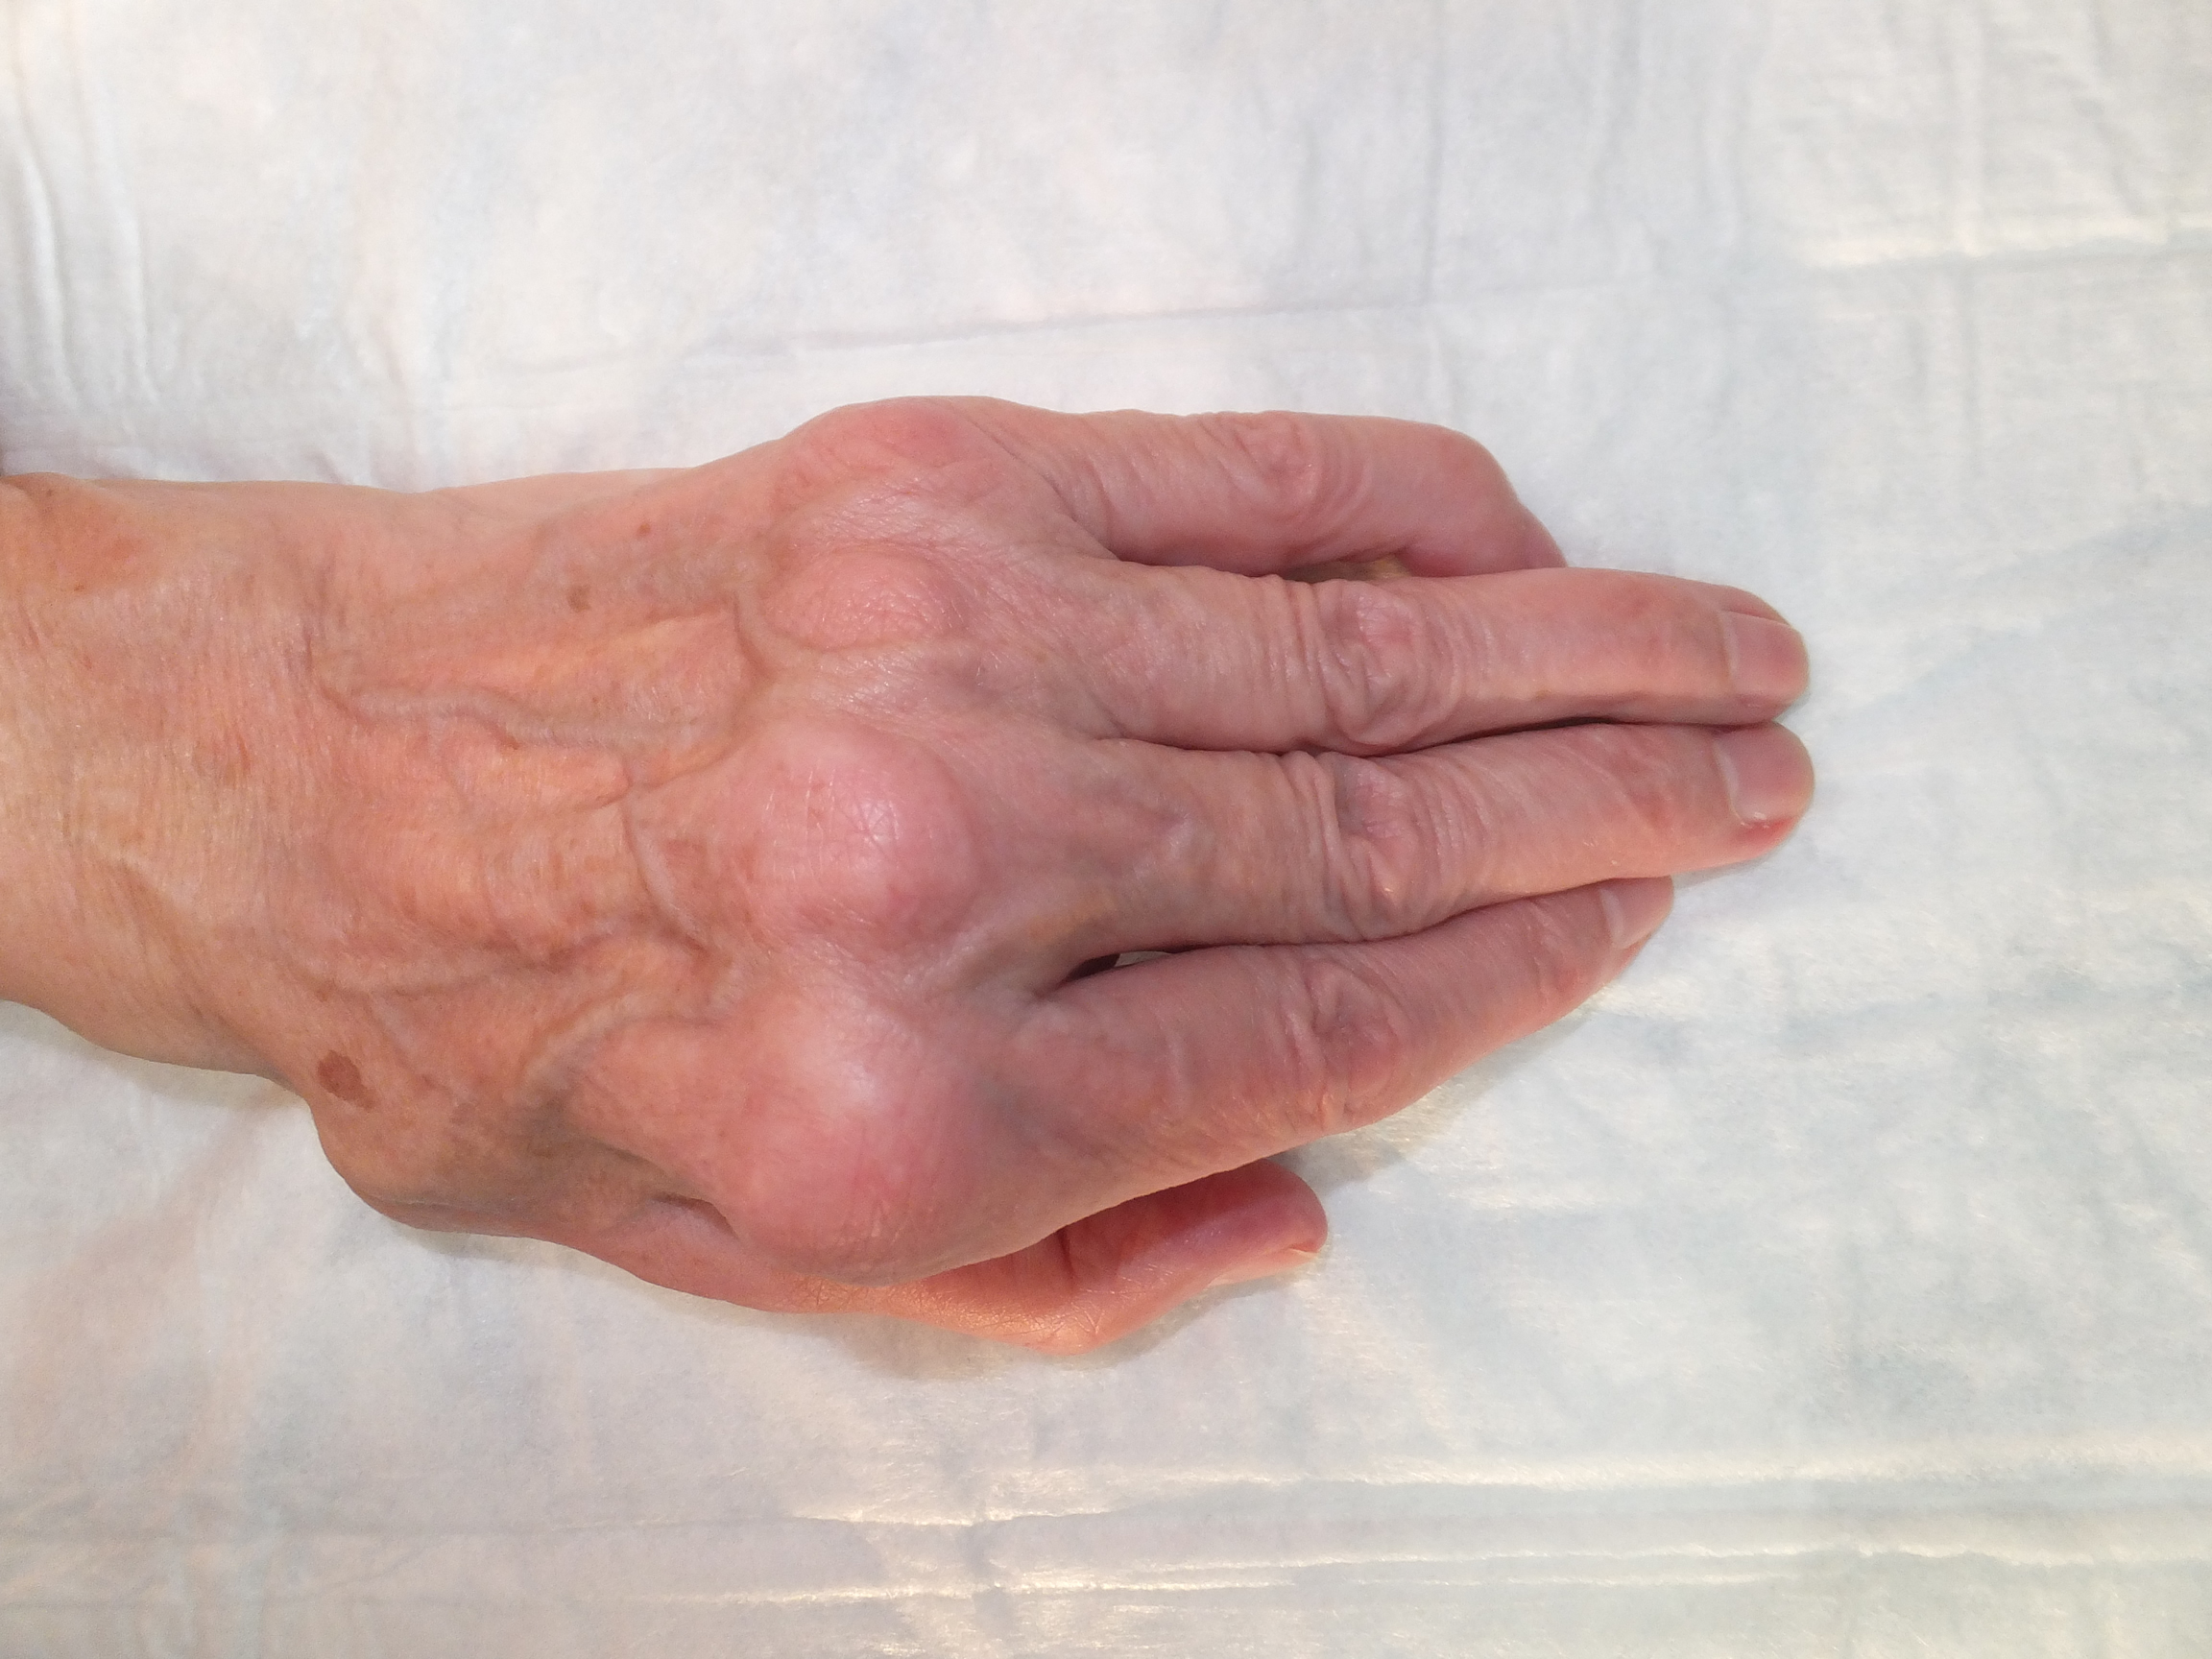 L'afectació del canell en l'Artritis Reumatoide